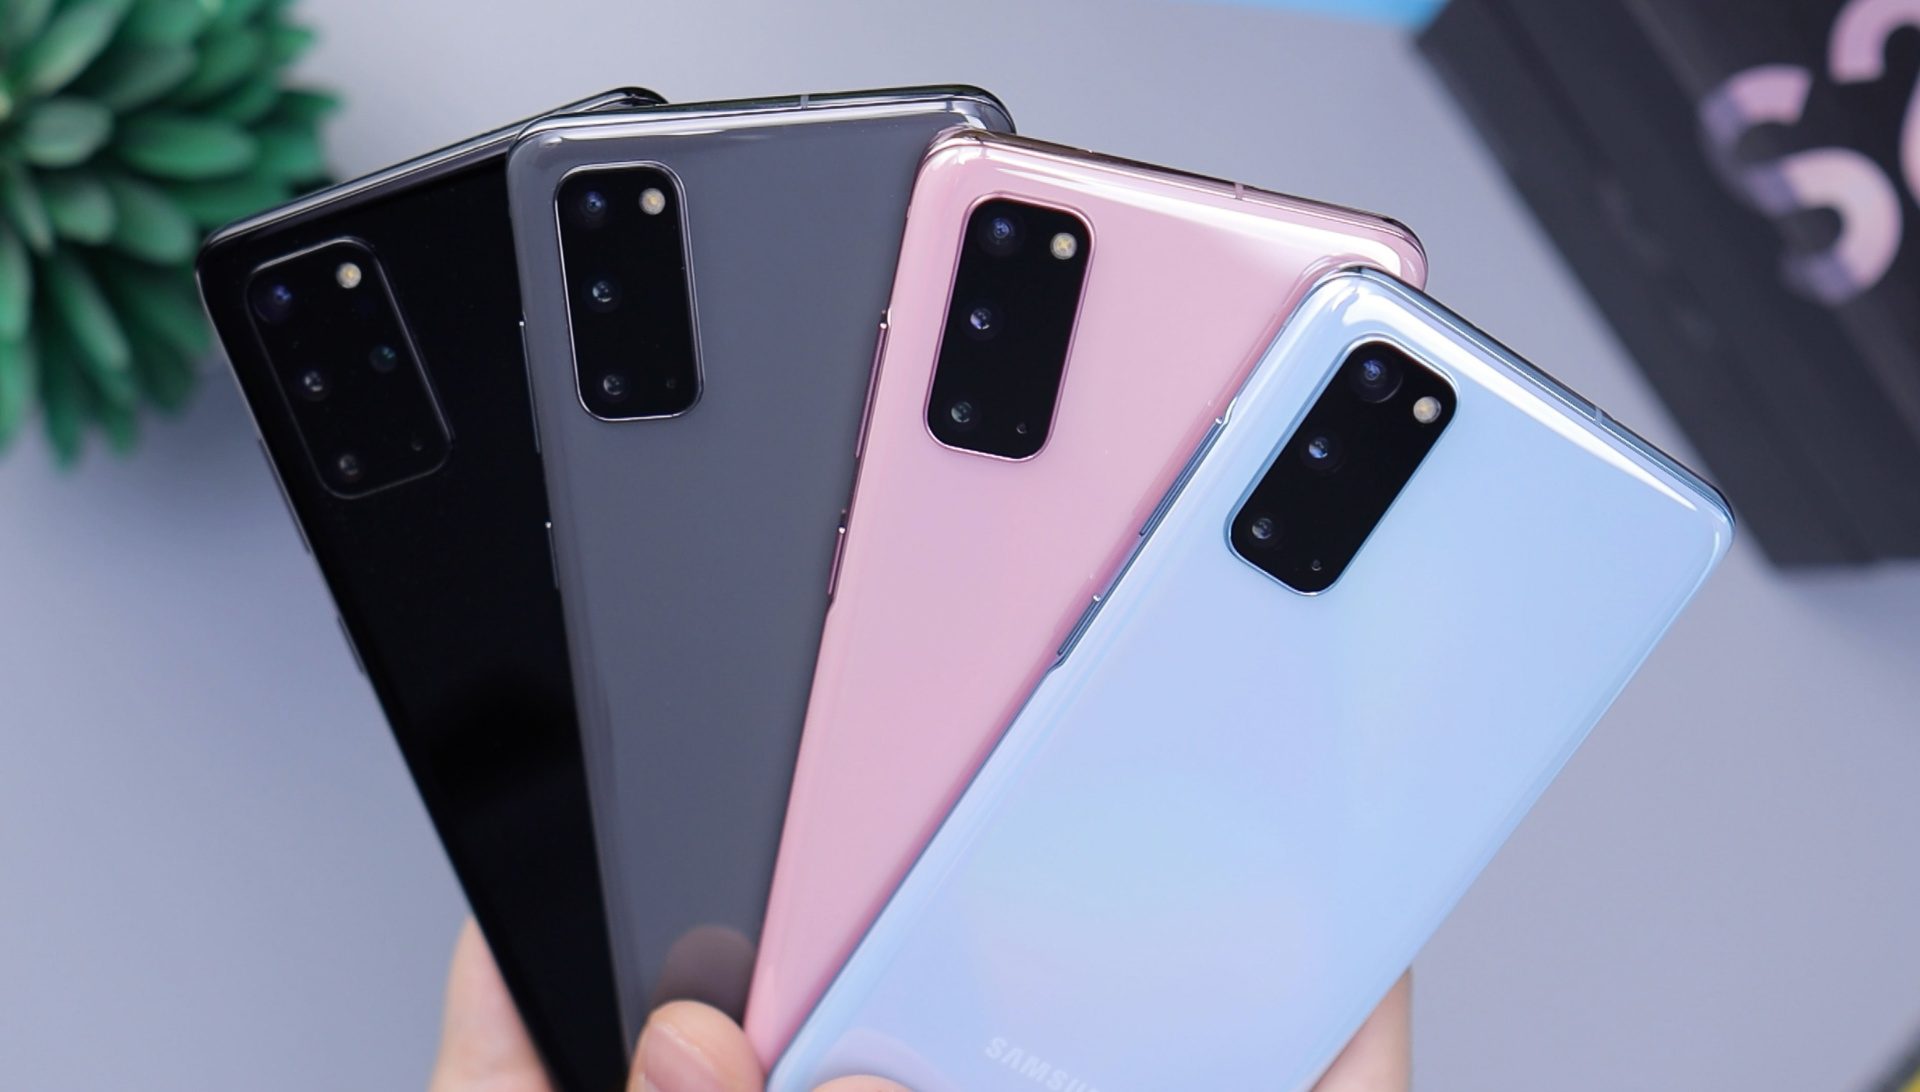 Chytré telefony od Samsungu v různých barevných provedeních na ilustračním snímku